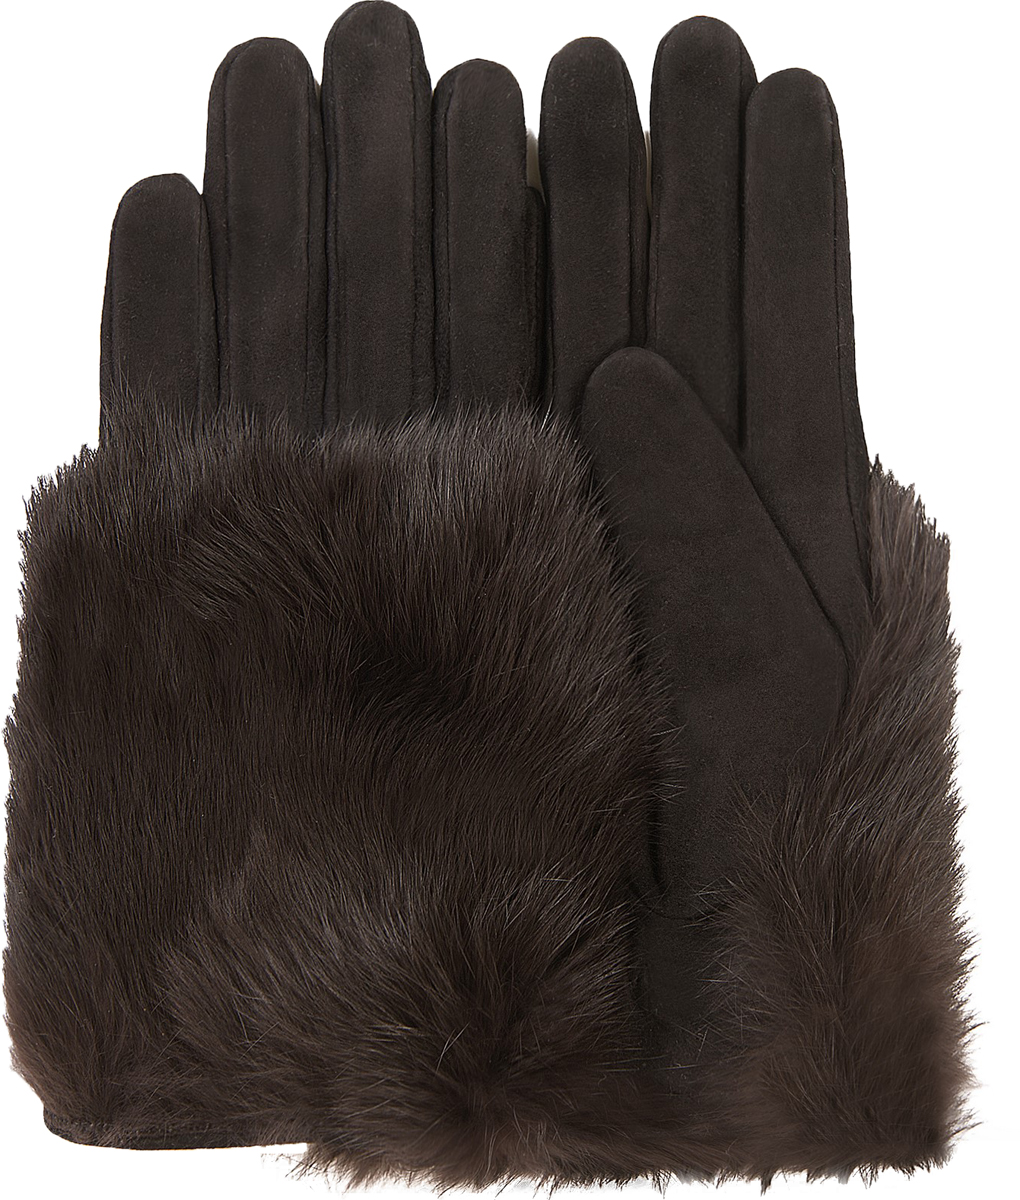 Перчатки женские Dali Exclusive, цвет: черный. S11_EPURE/NOIR. Размер 6,5